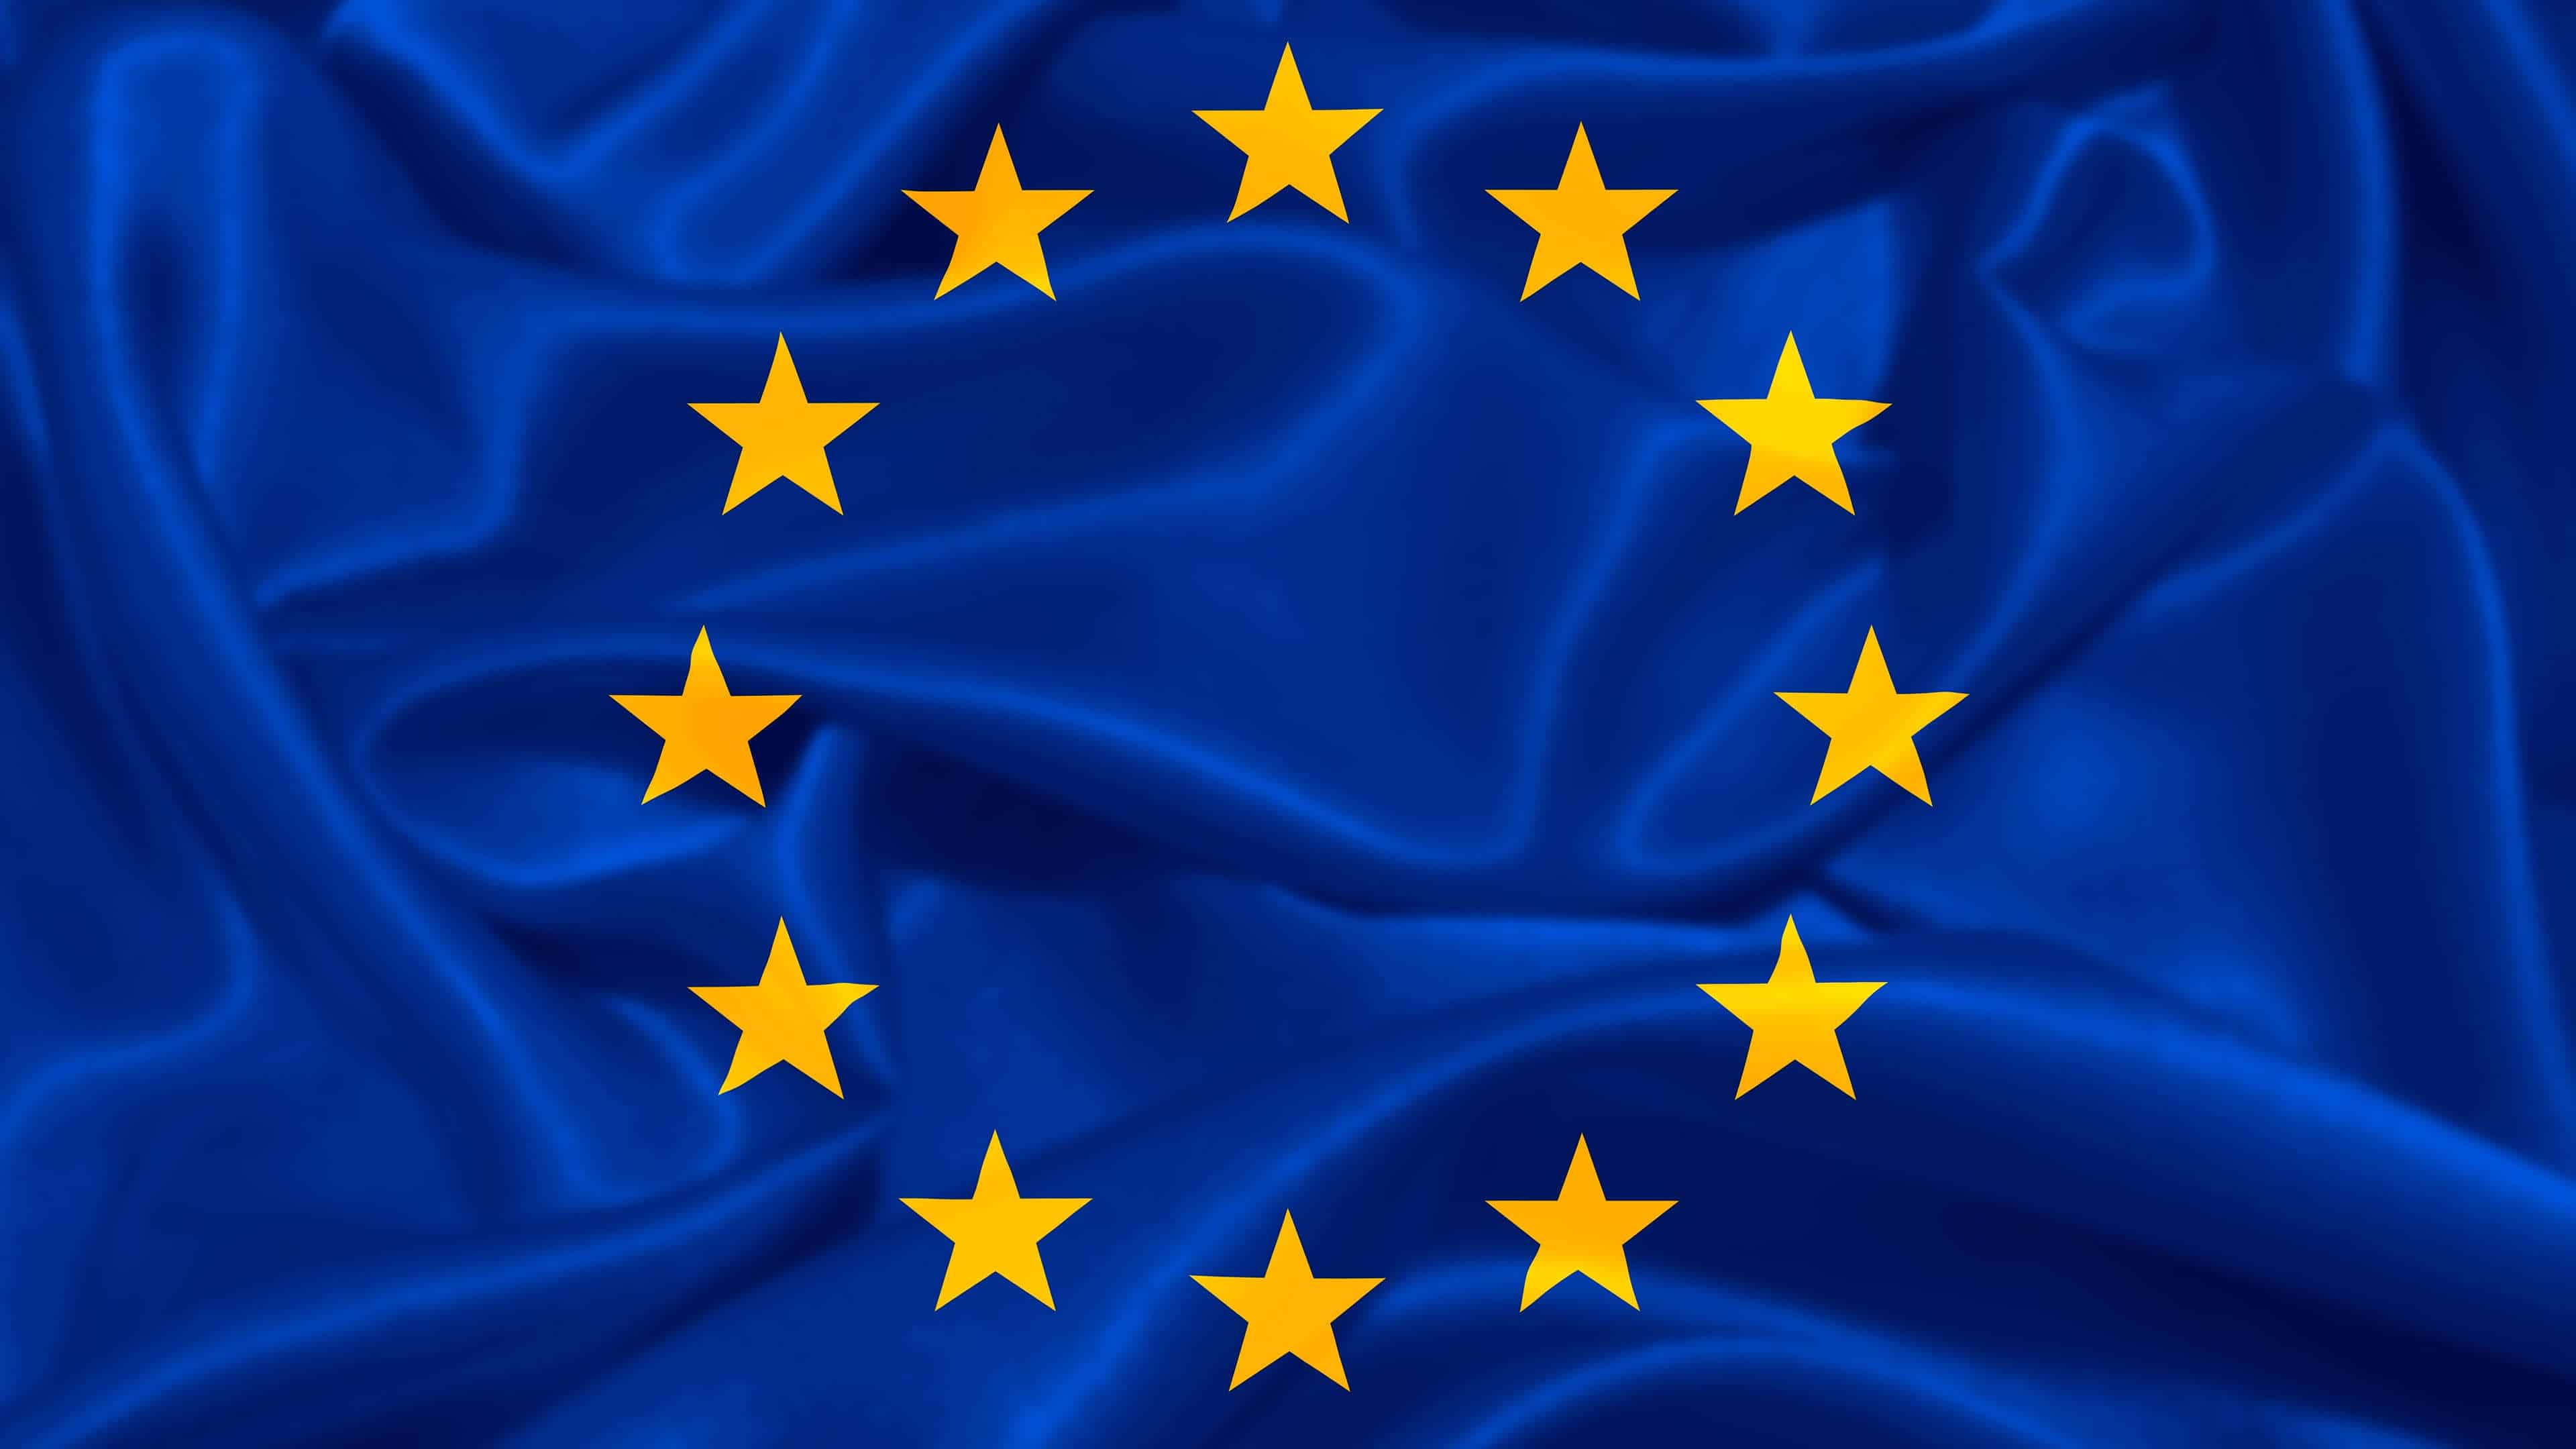 Ταπετσαρία UHD 4K με σημαία της Ευρωπαϊκής Ένωσης | Pixelz